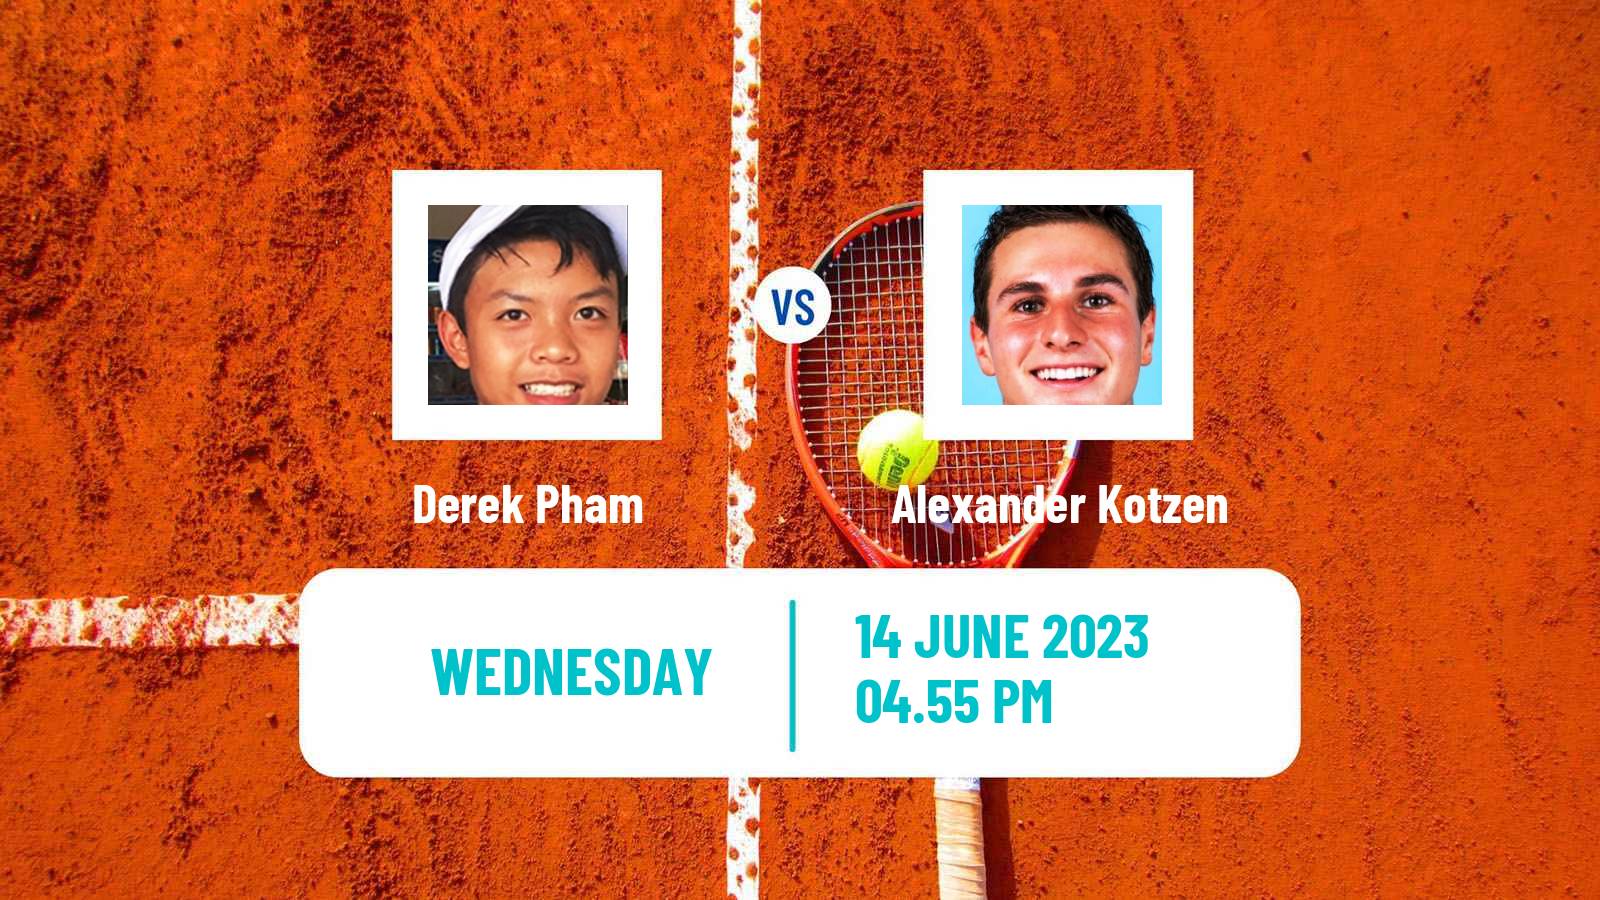 Tennis ITF M15 San Diego Ca 2 Men Derek Pham - Alexander Kotzen